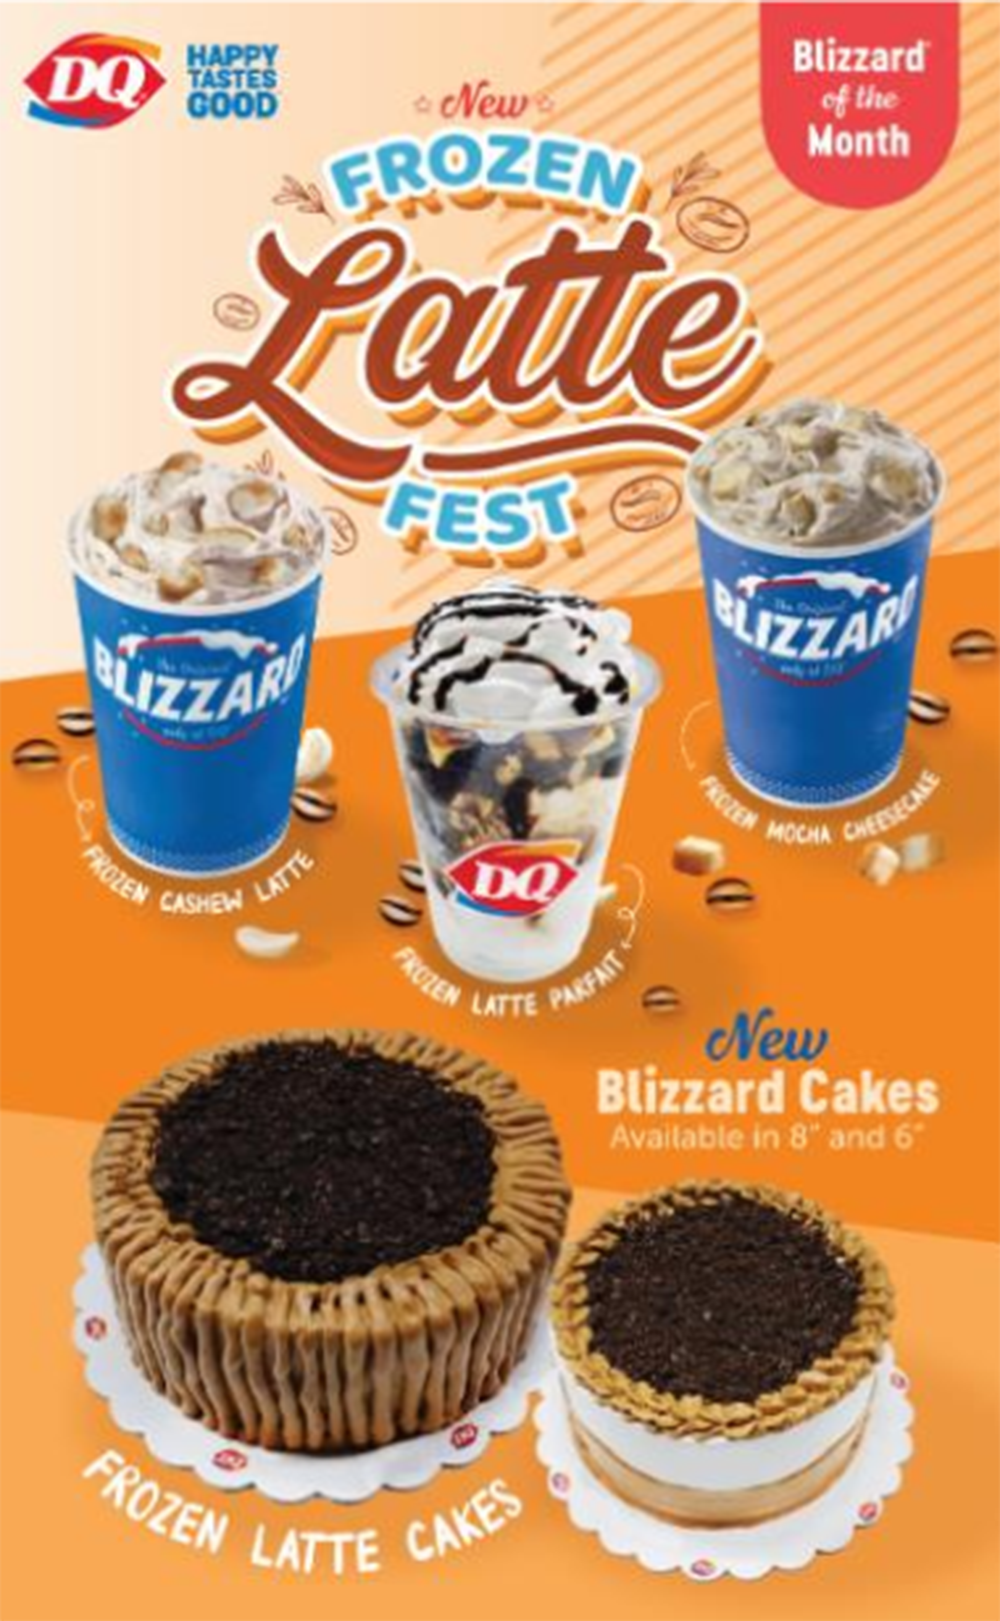 Dairy Queen kick-starts 2021 with Frozen Latte Blizzard Fest